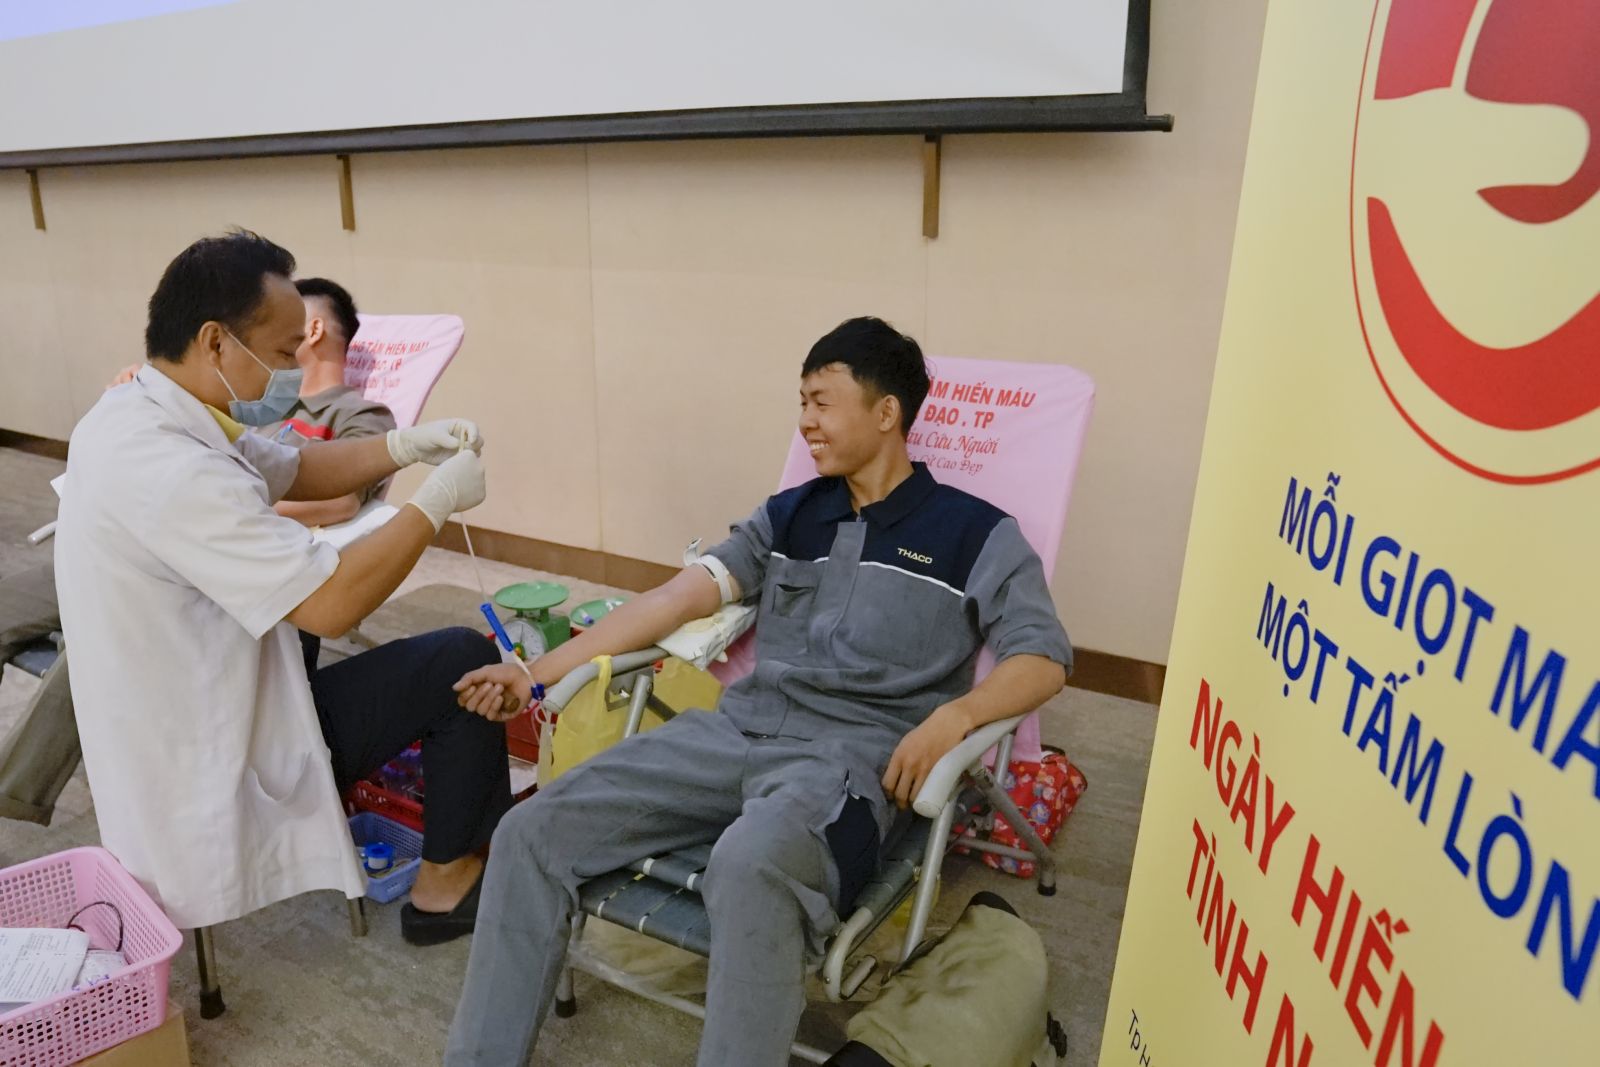 THACO khởi động chương trình hiến máu nhân đạo trên phạm vi toàn quốc